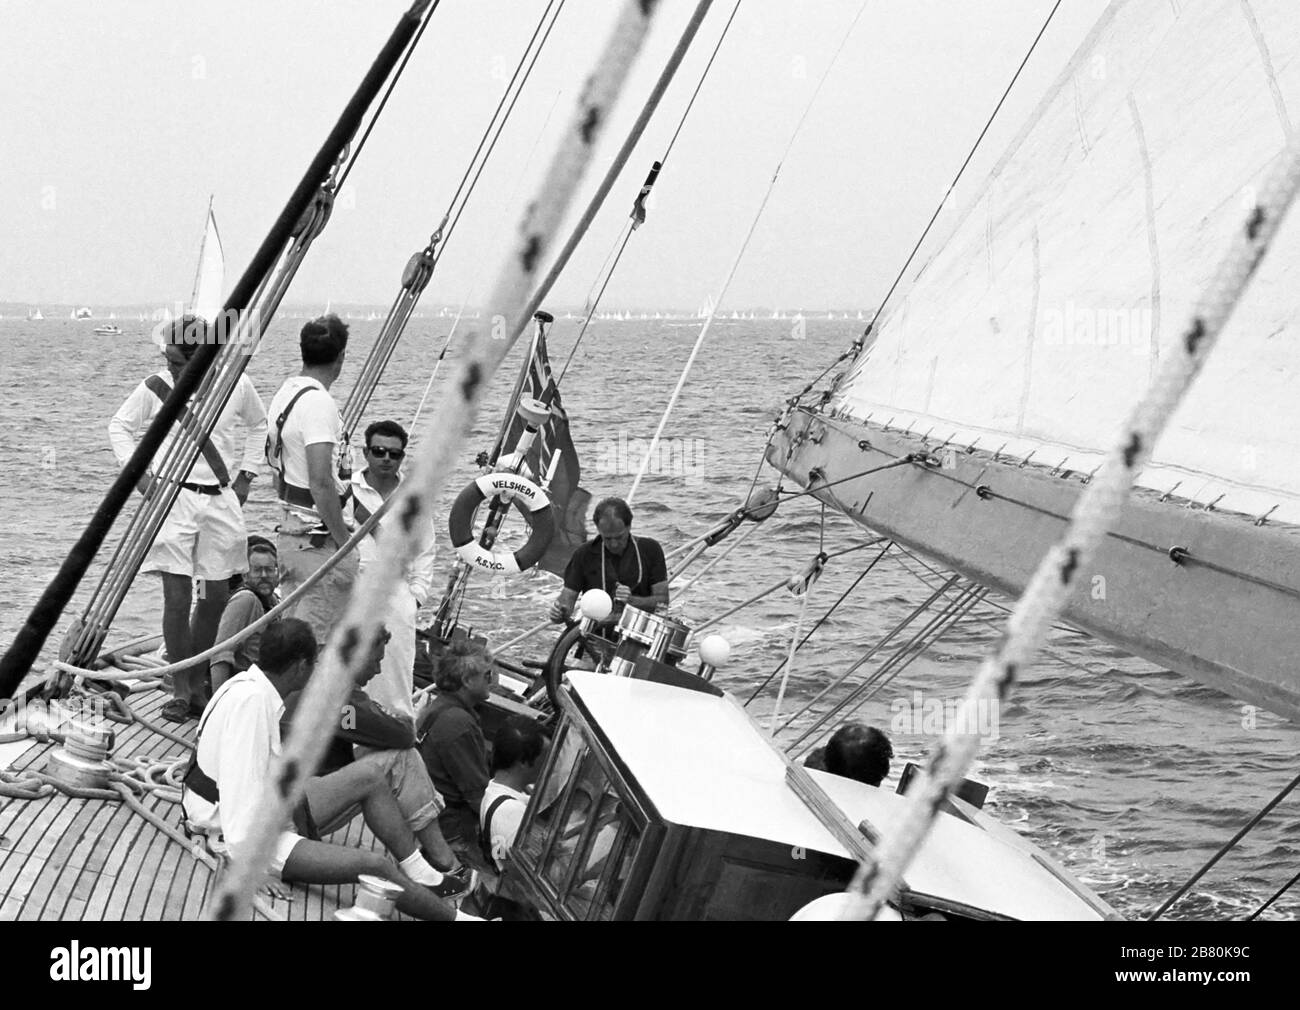 Équipage et après-garde à bord du yacht J Class 'Velsheda' après la première repose, naviguant dans le Solent, Hampshire, Angleterre, Royaume-Uni, été 1991. Archiver la photographie de film noir et blanc Banque D'Images